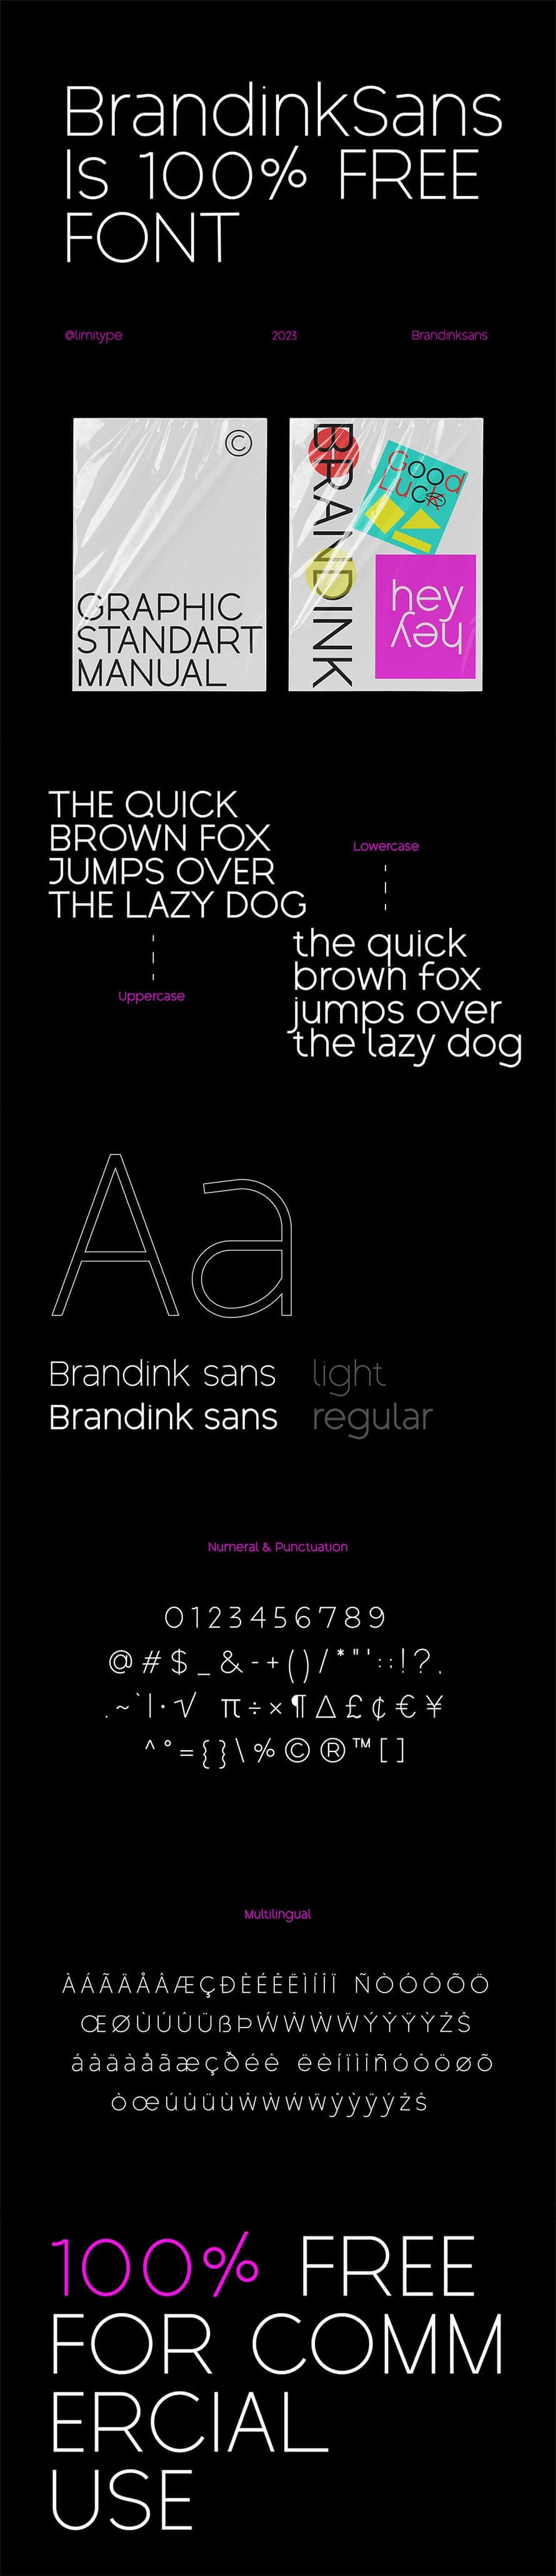 Brandink Sans Fuente gratuita - Fuentes nuevas: mejore sus diseños con las últimas fuentes gratuitas